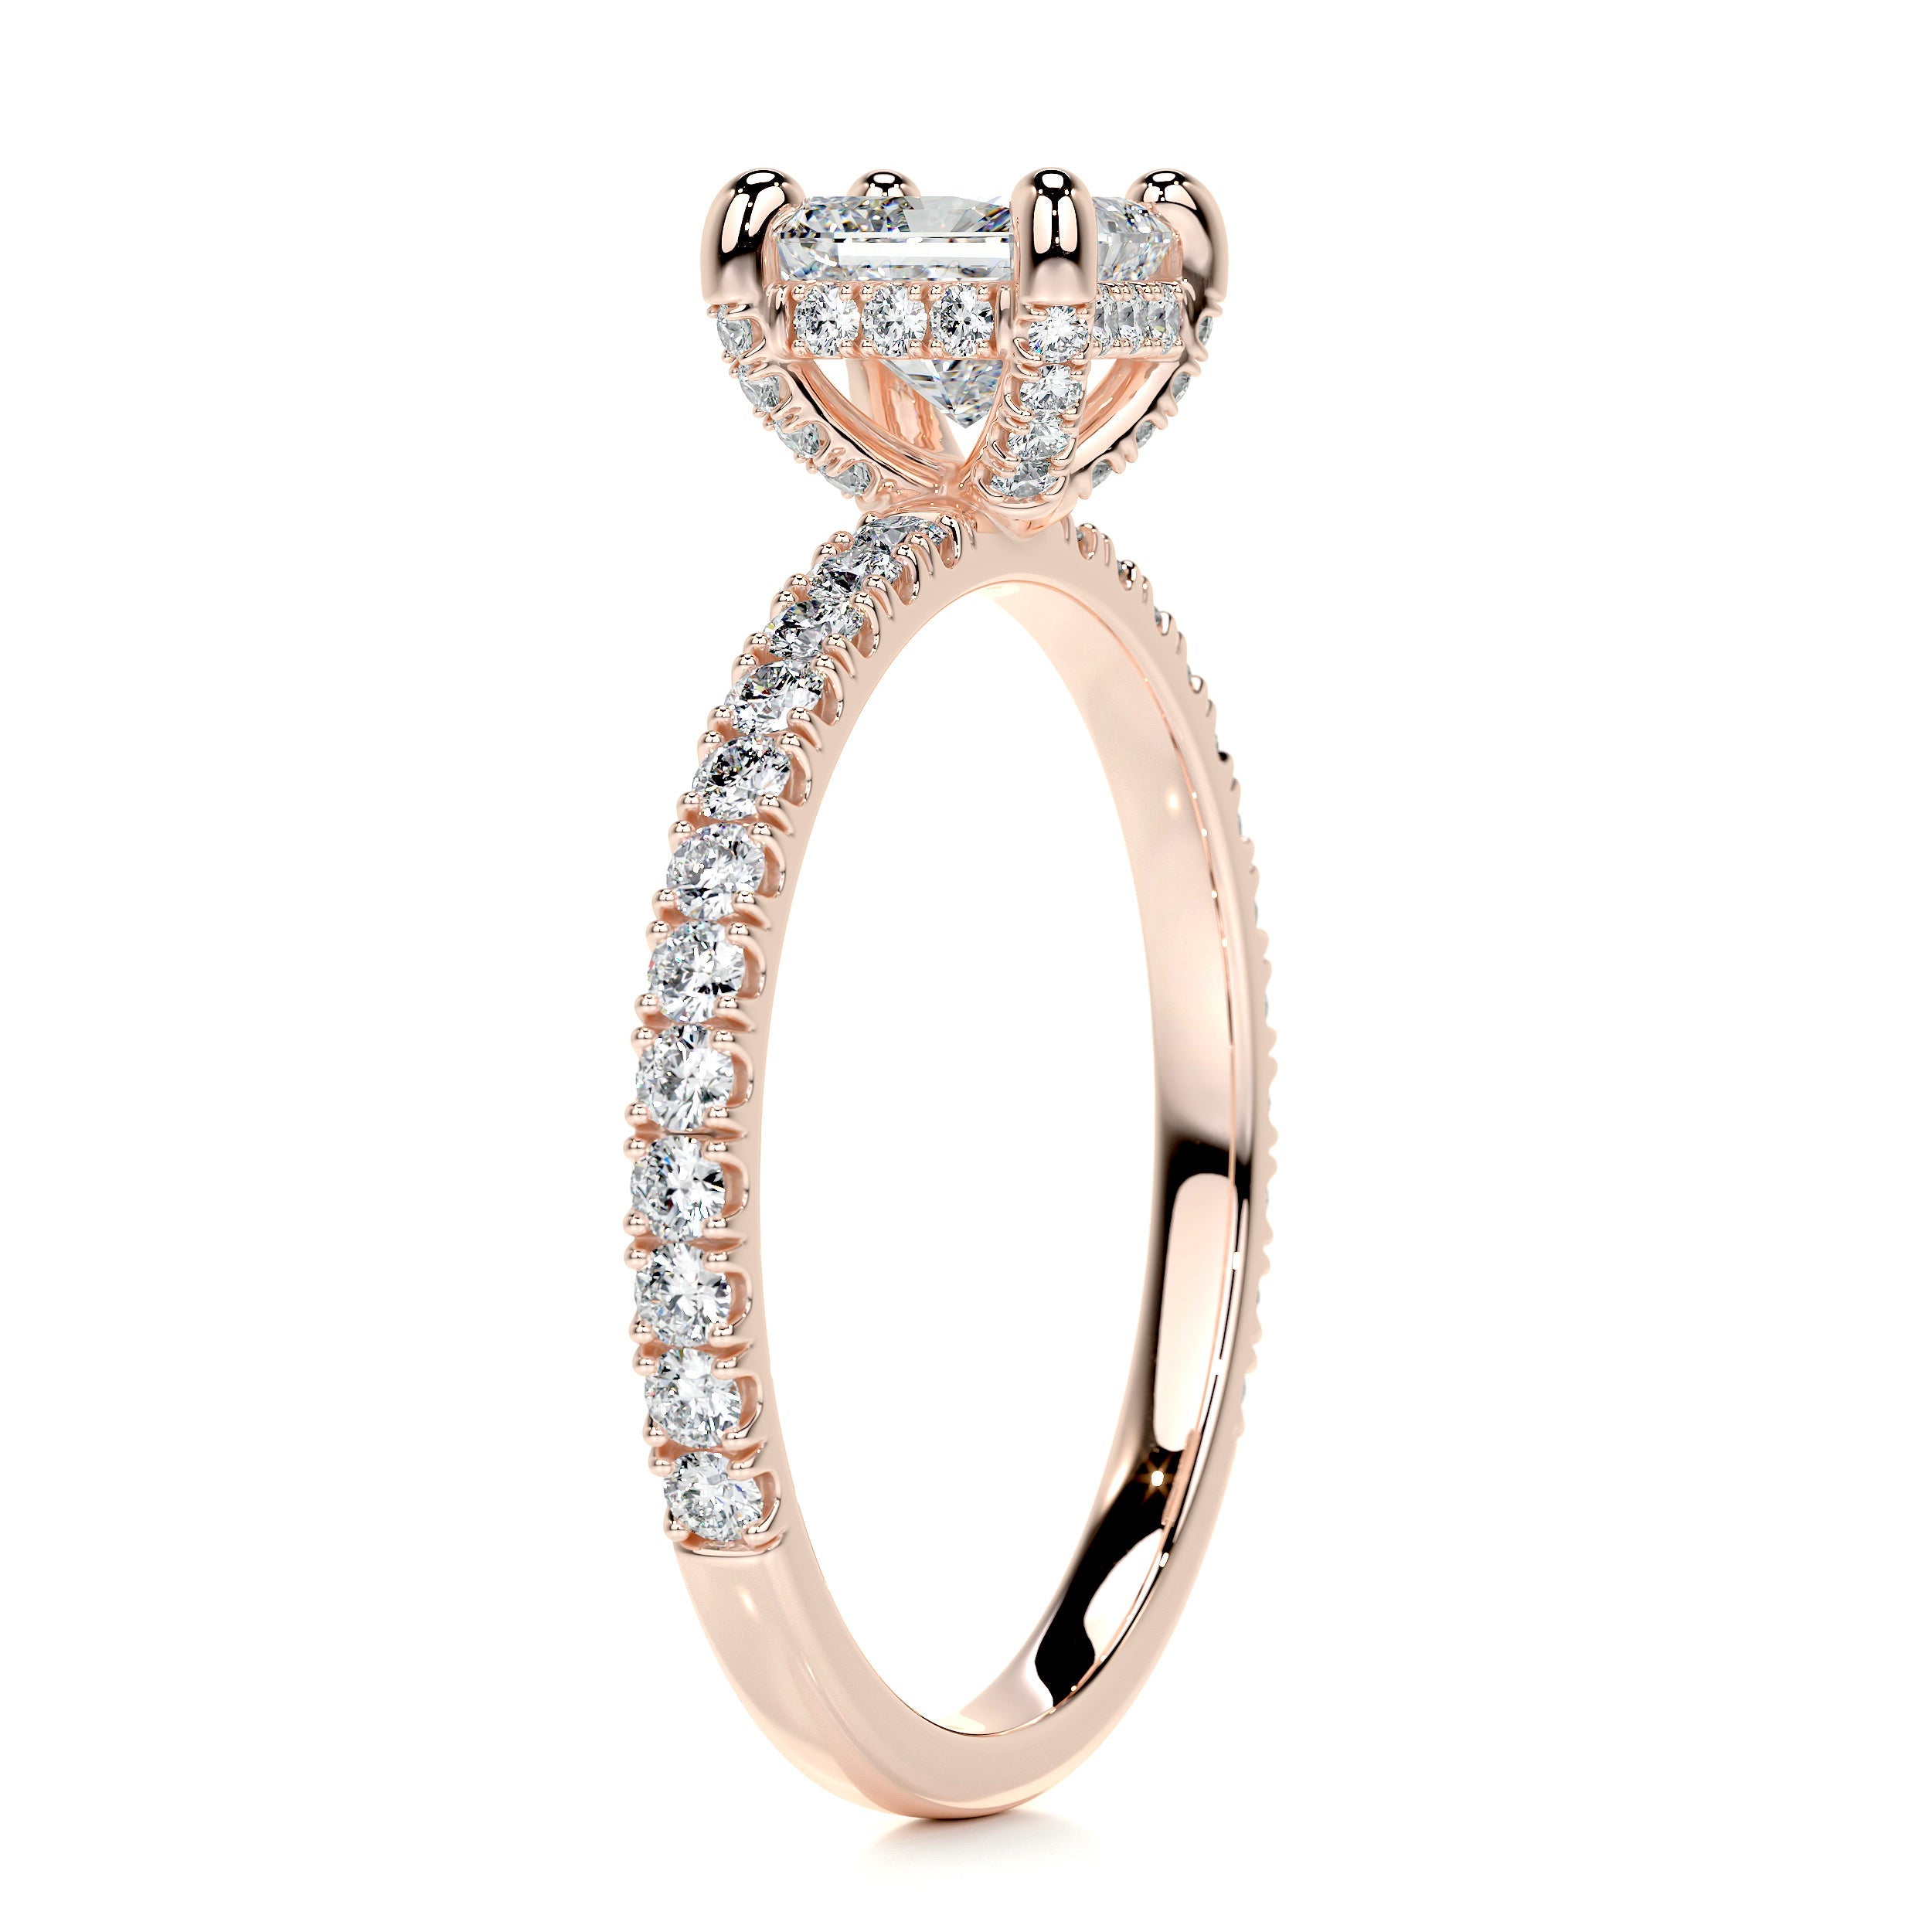 Deborah Moissanite & Diamonds Ring -14K Rose Gold